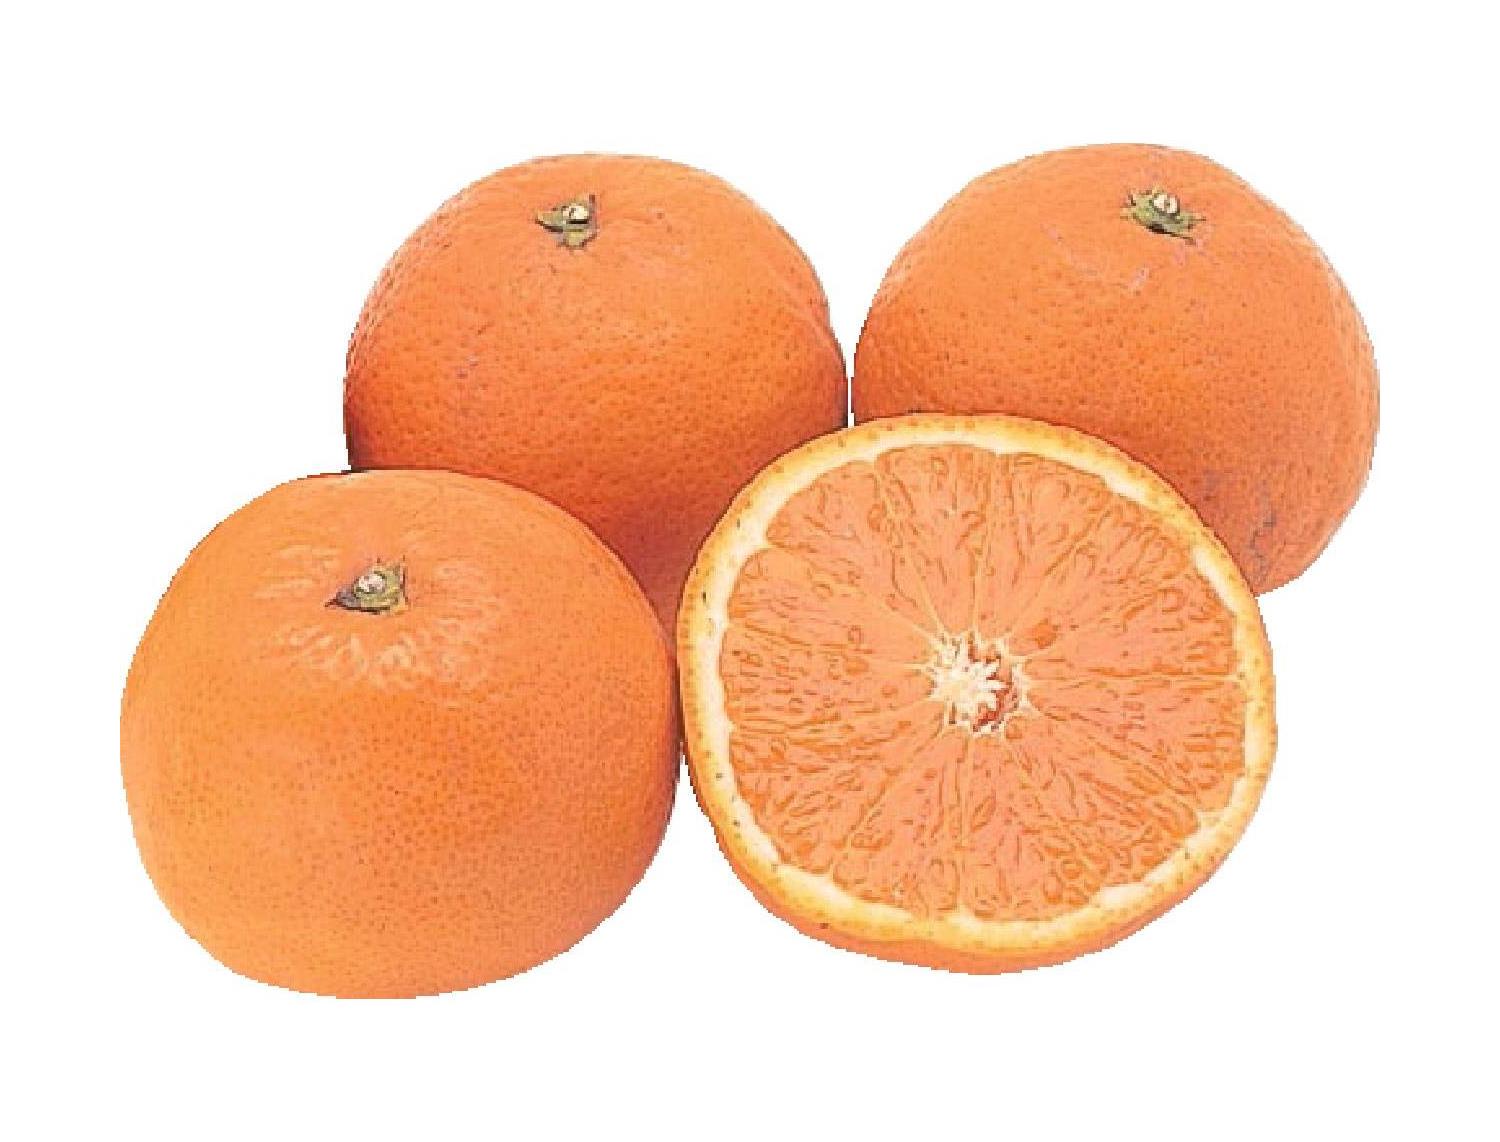 【ふぞろい】紀南の木熟清見オレンジ